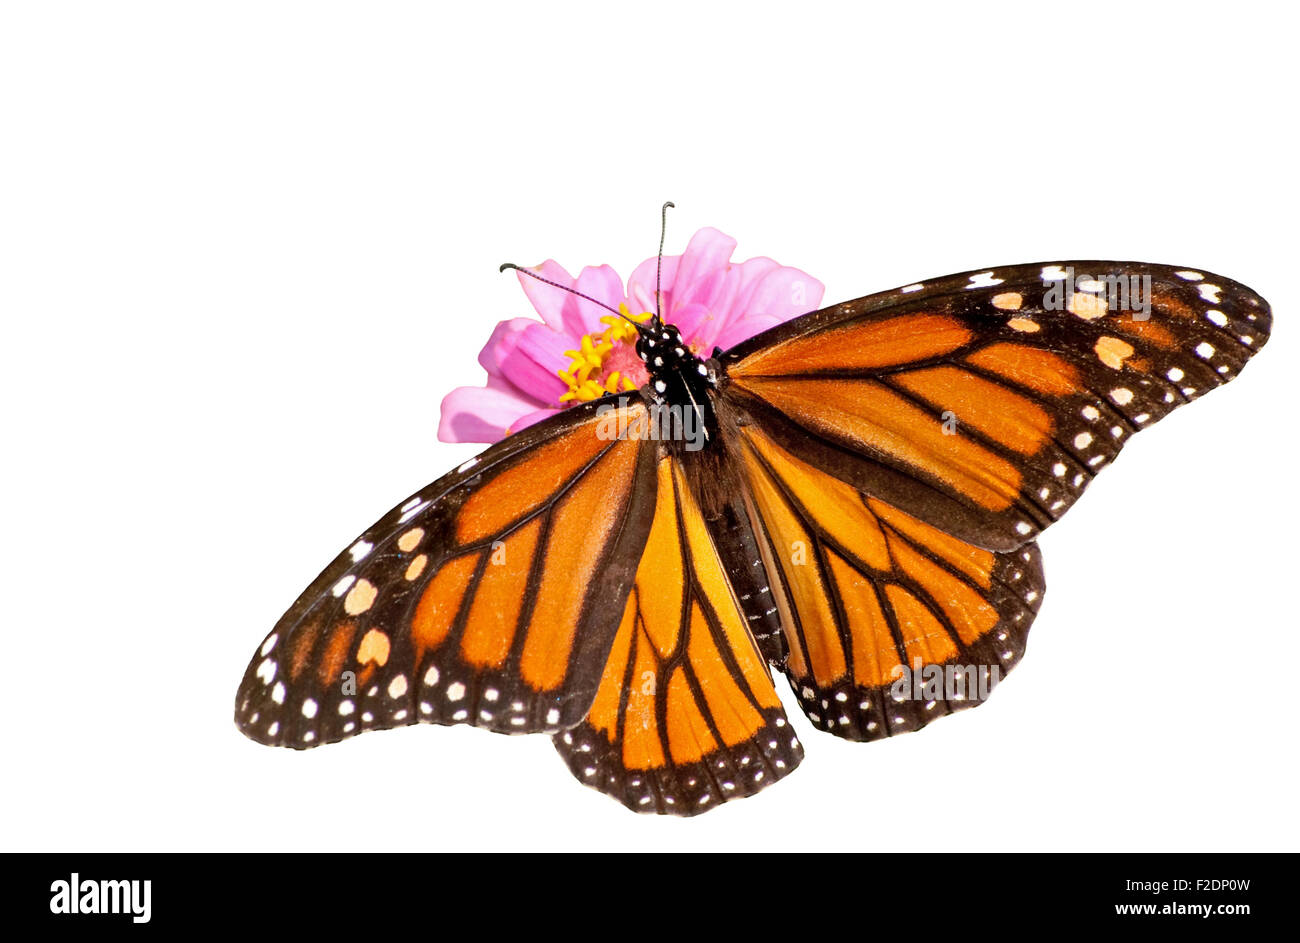 MARIPOSAS! Caja de Memoria de Mariposa Voladora Ecuador